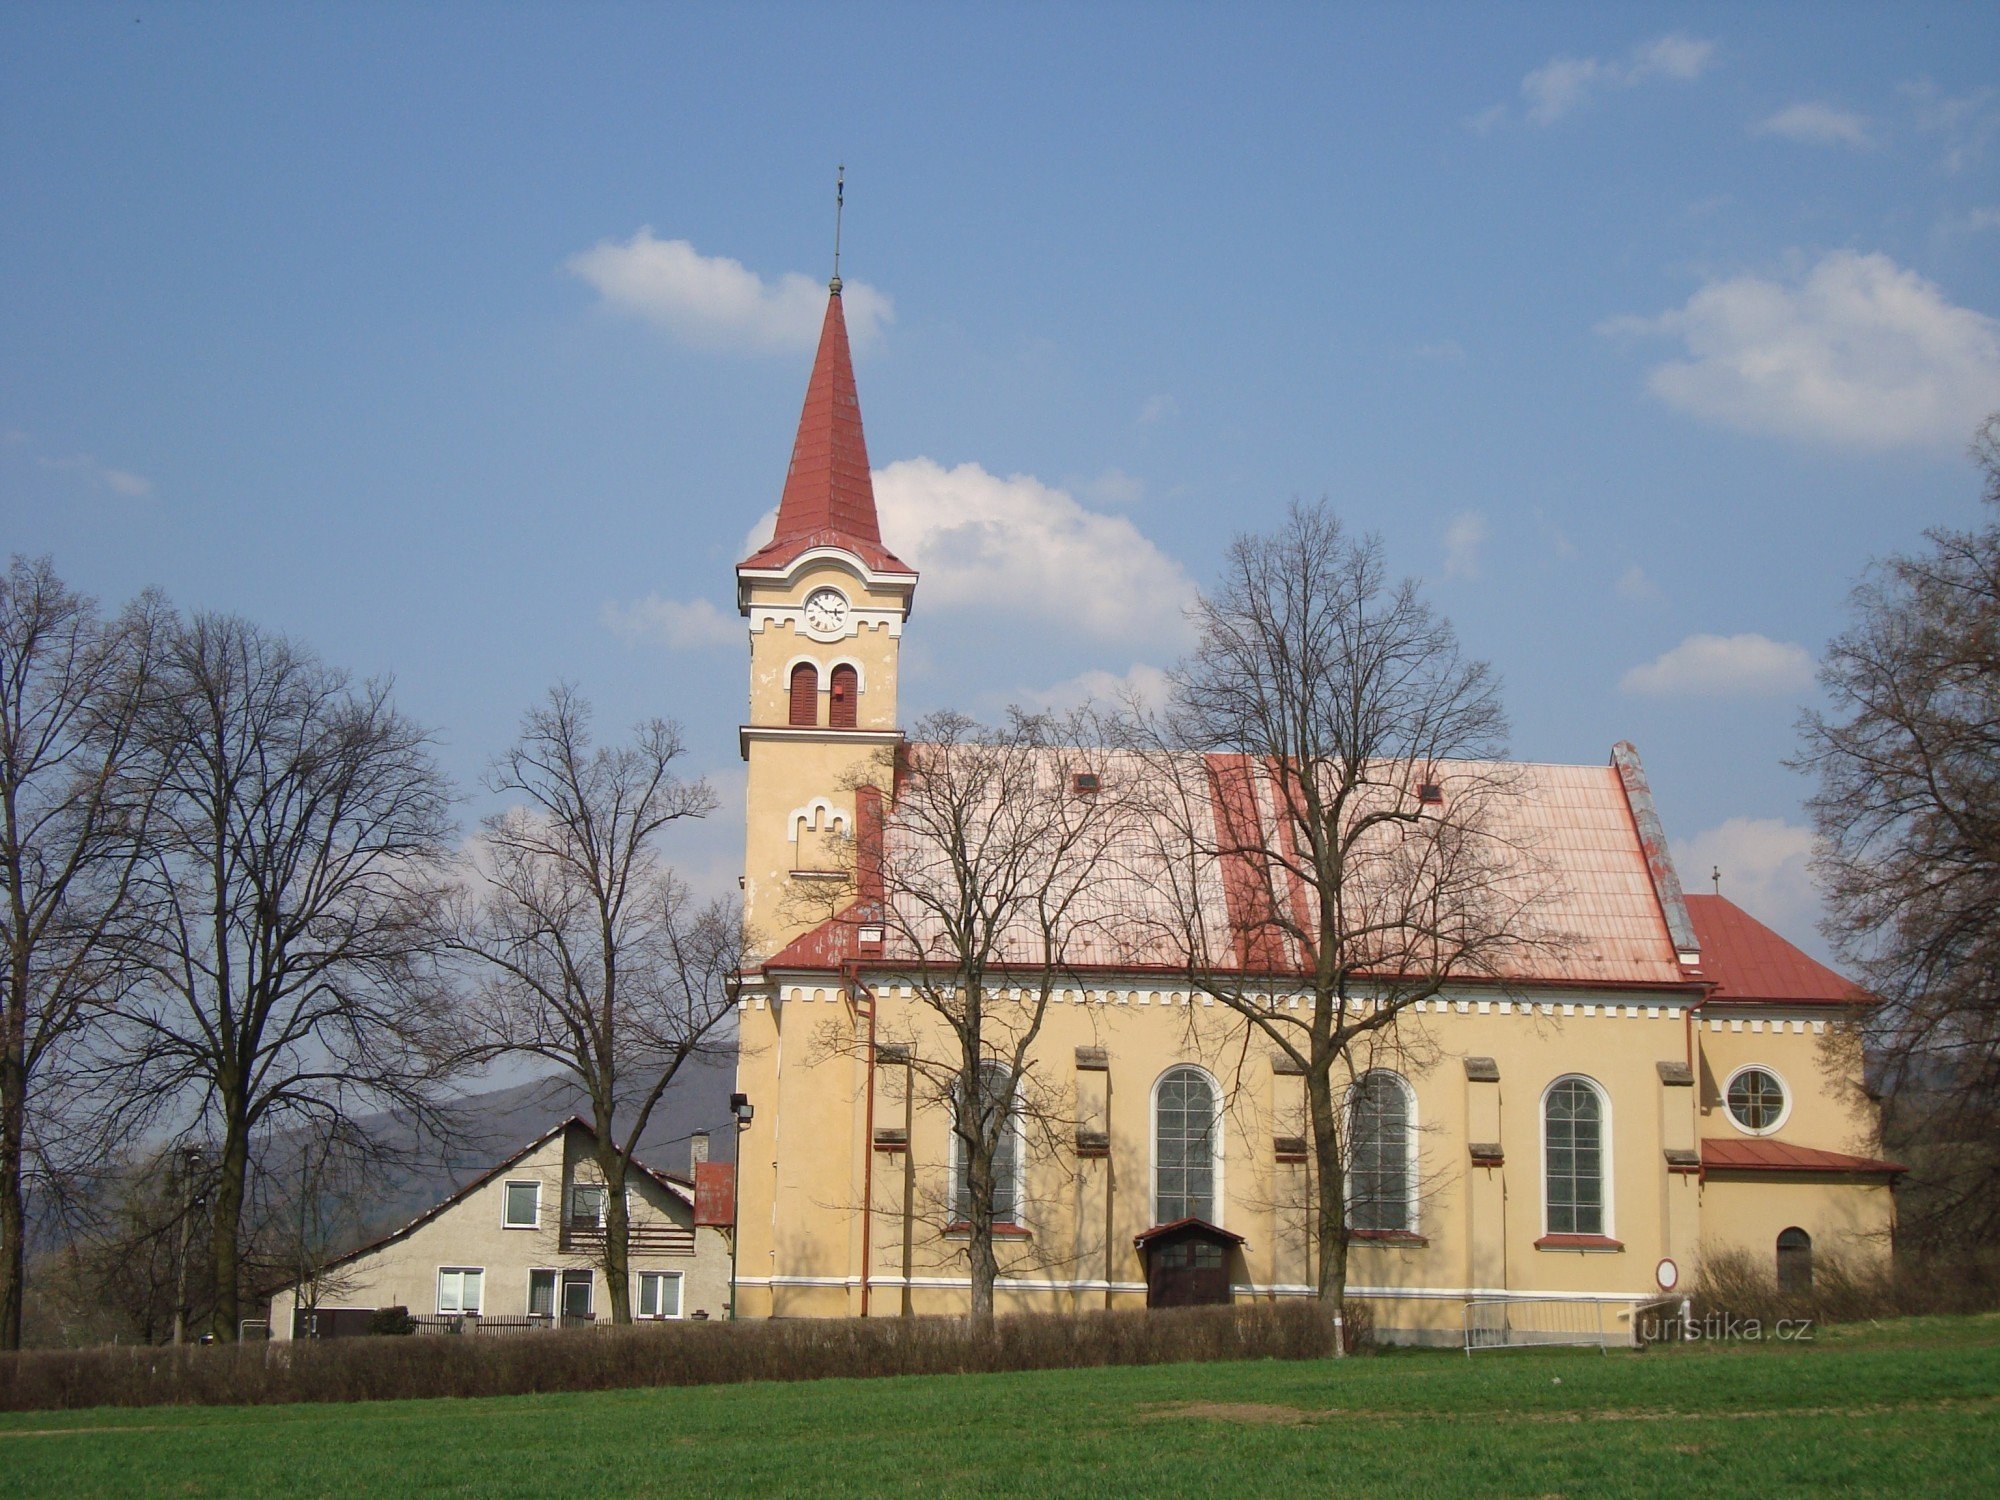 Hlubočky-ves-Neo-Romanesque 支部教会の主の聖心の 1908-12-Photo